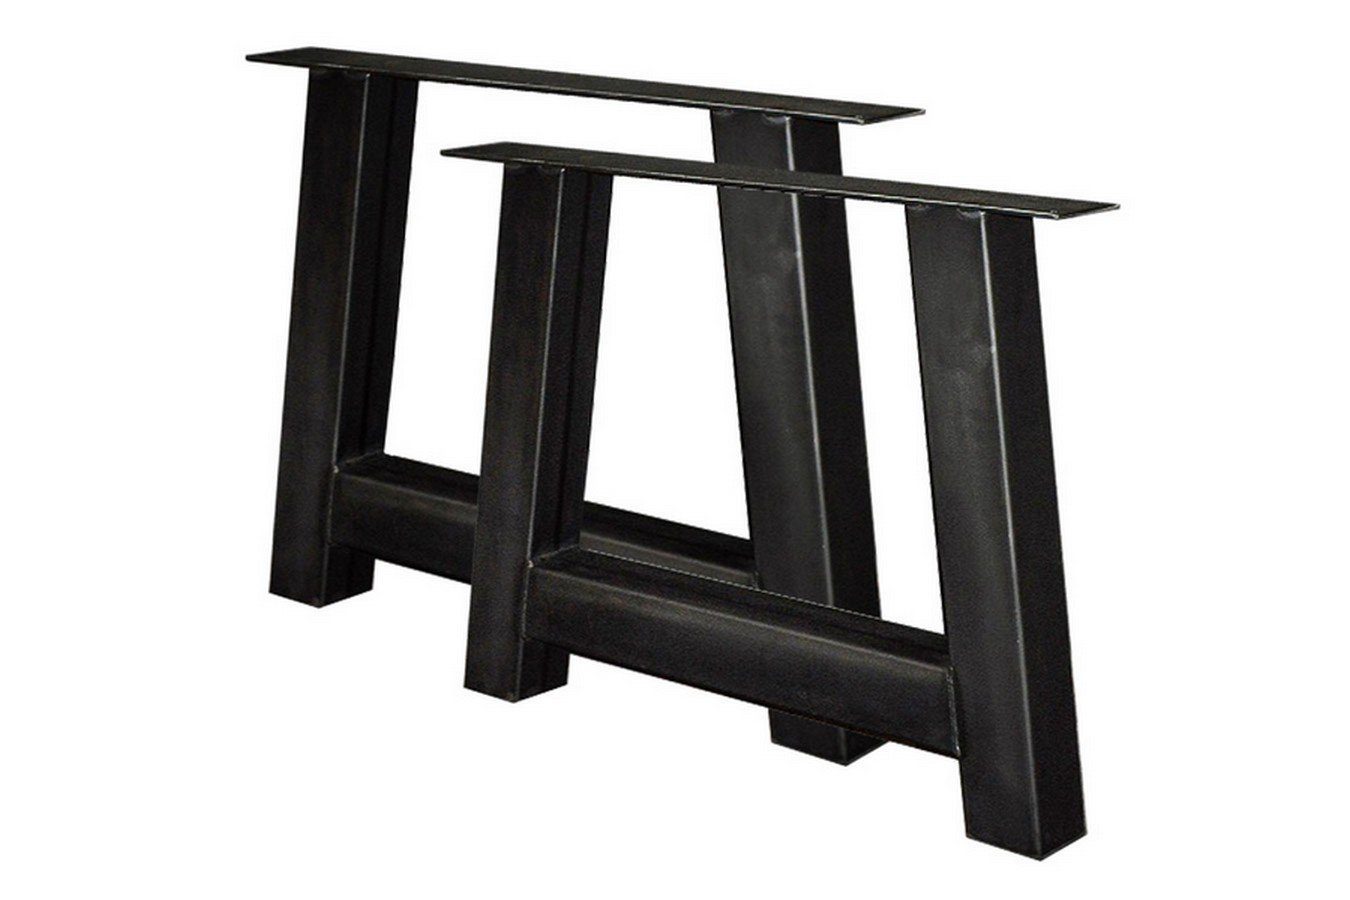 A Tischbein Tischhelden schwarz 2-er Tischbeine Rohstahl Set